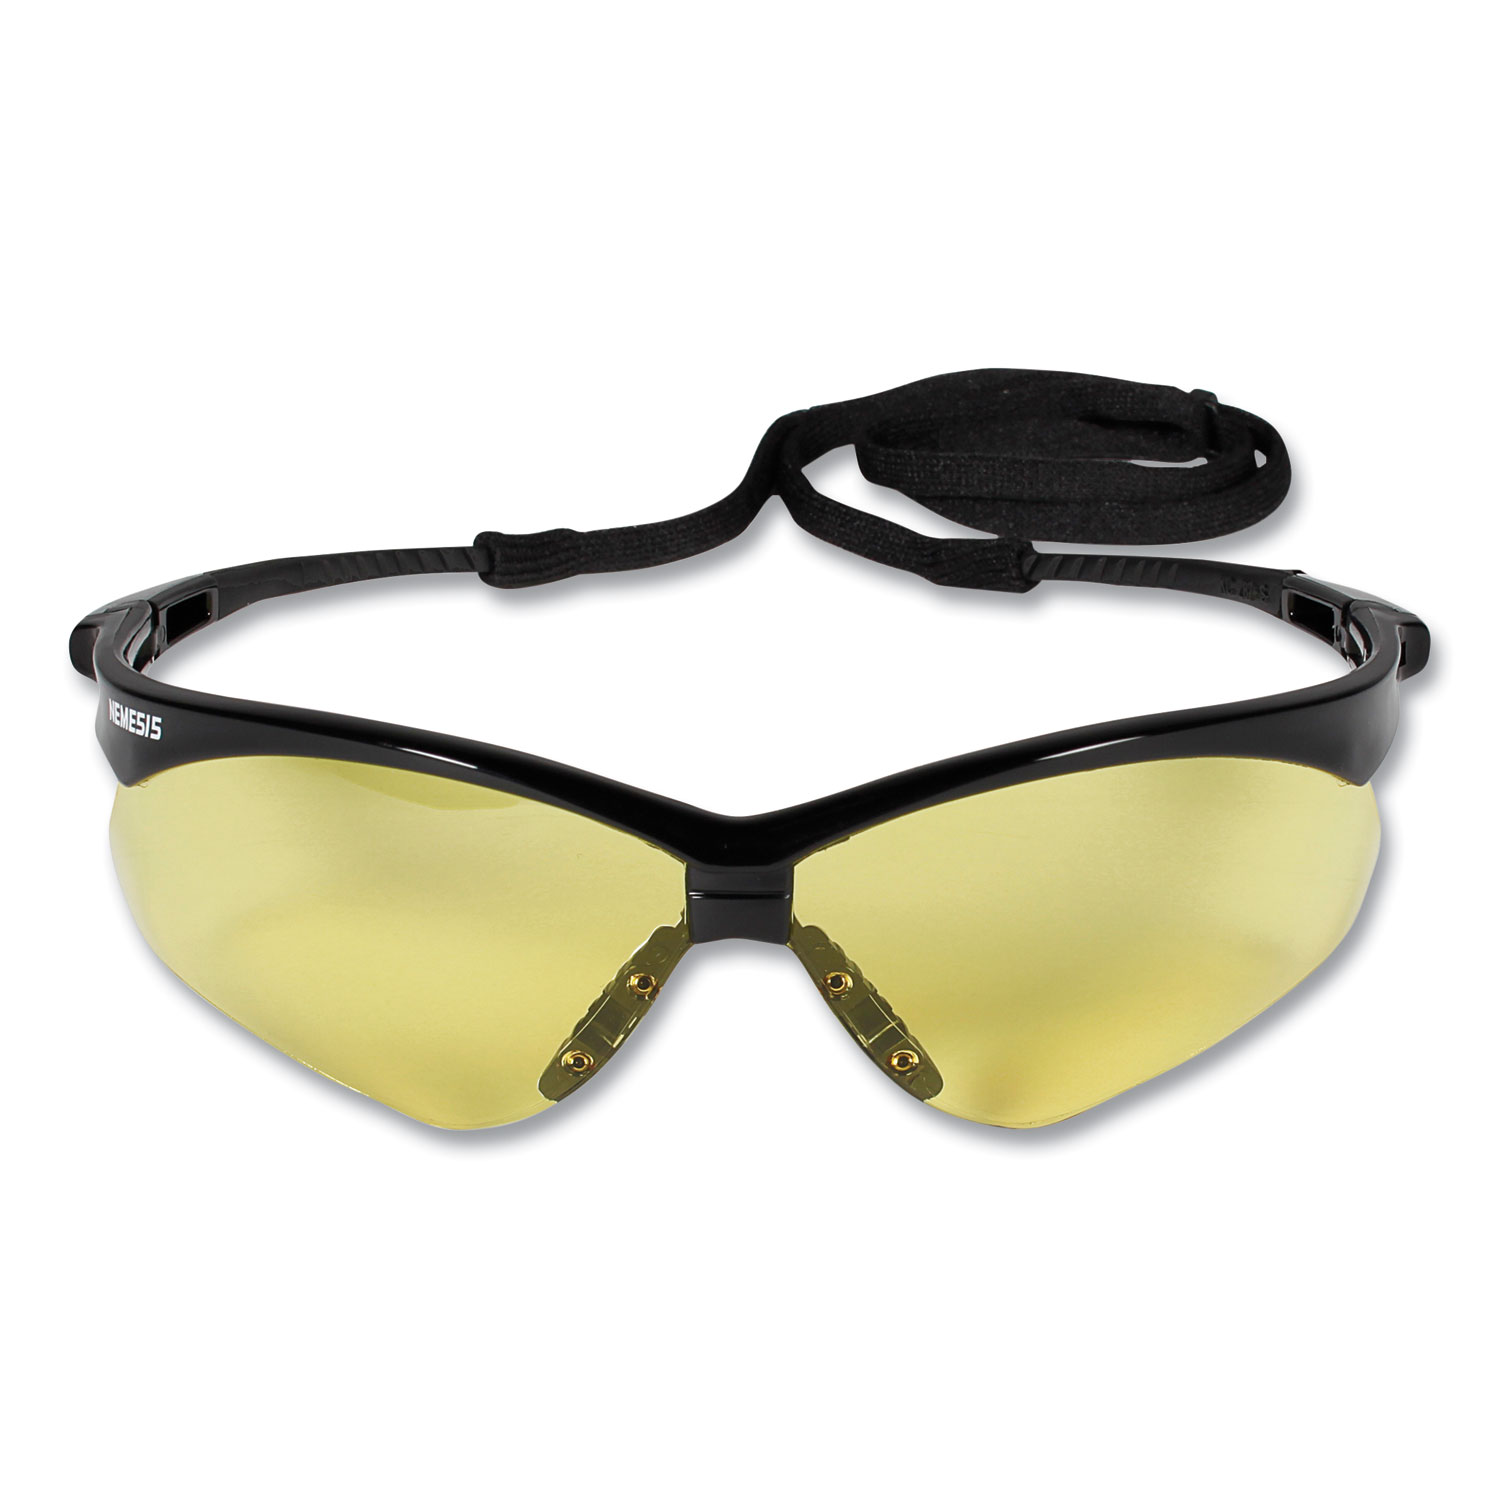 Nemesis Safety Glasses, Black Frame, Amber Lens